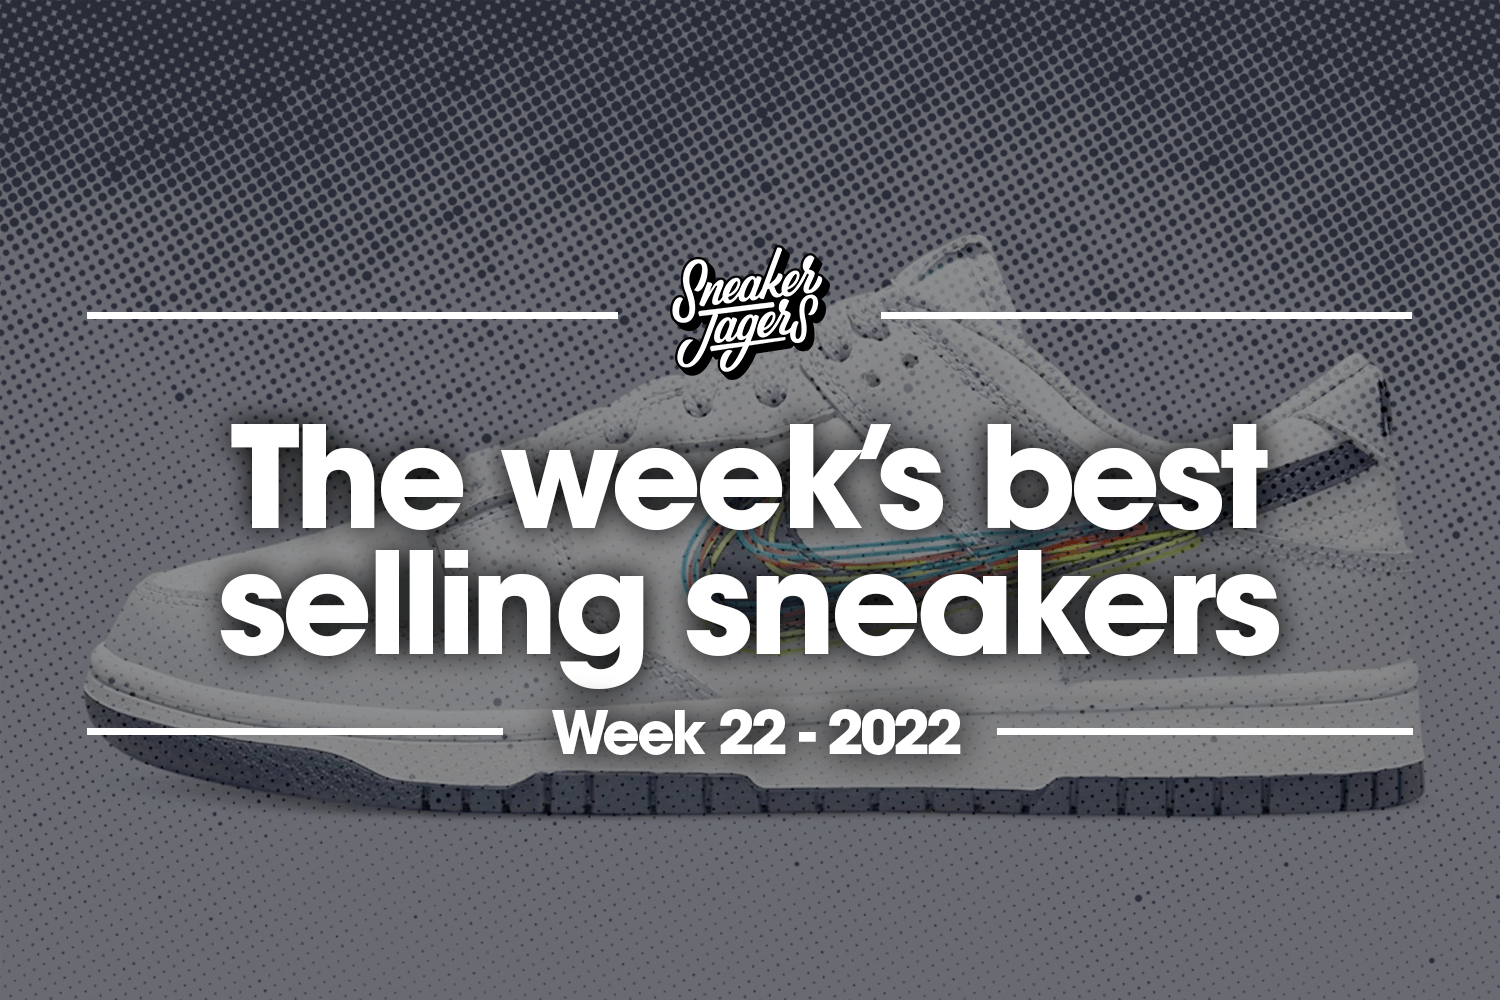 De 5 bestverkochte sneakers van week 22